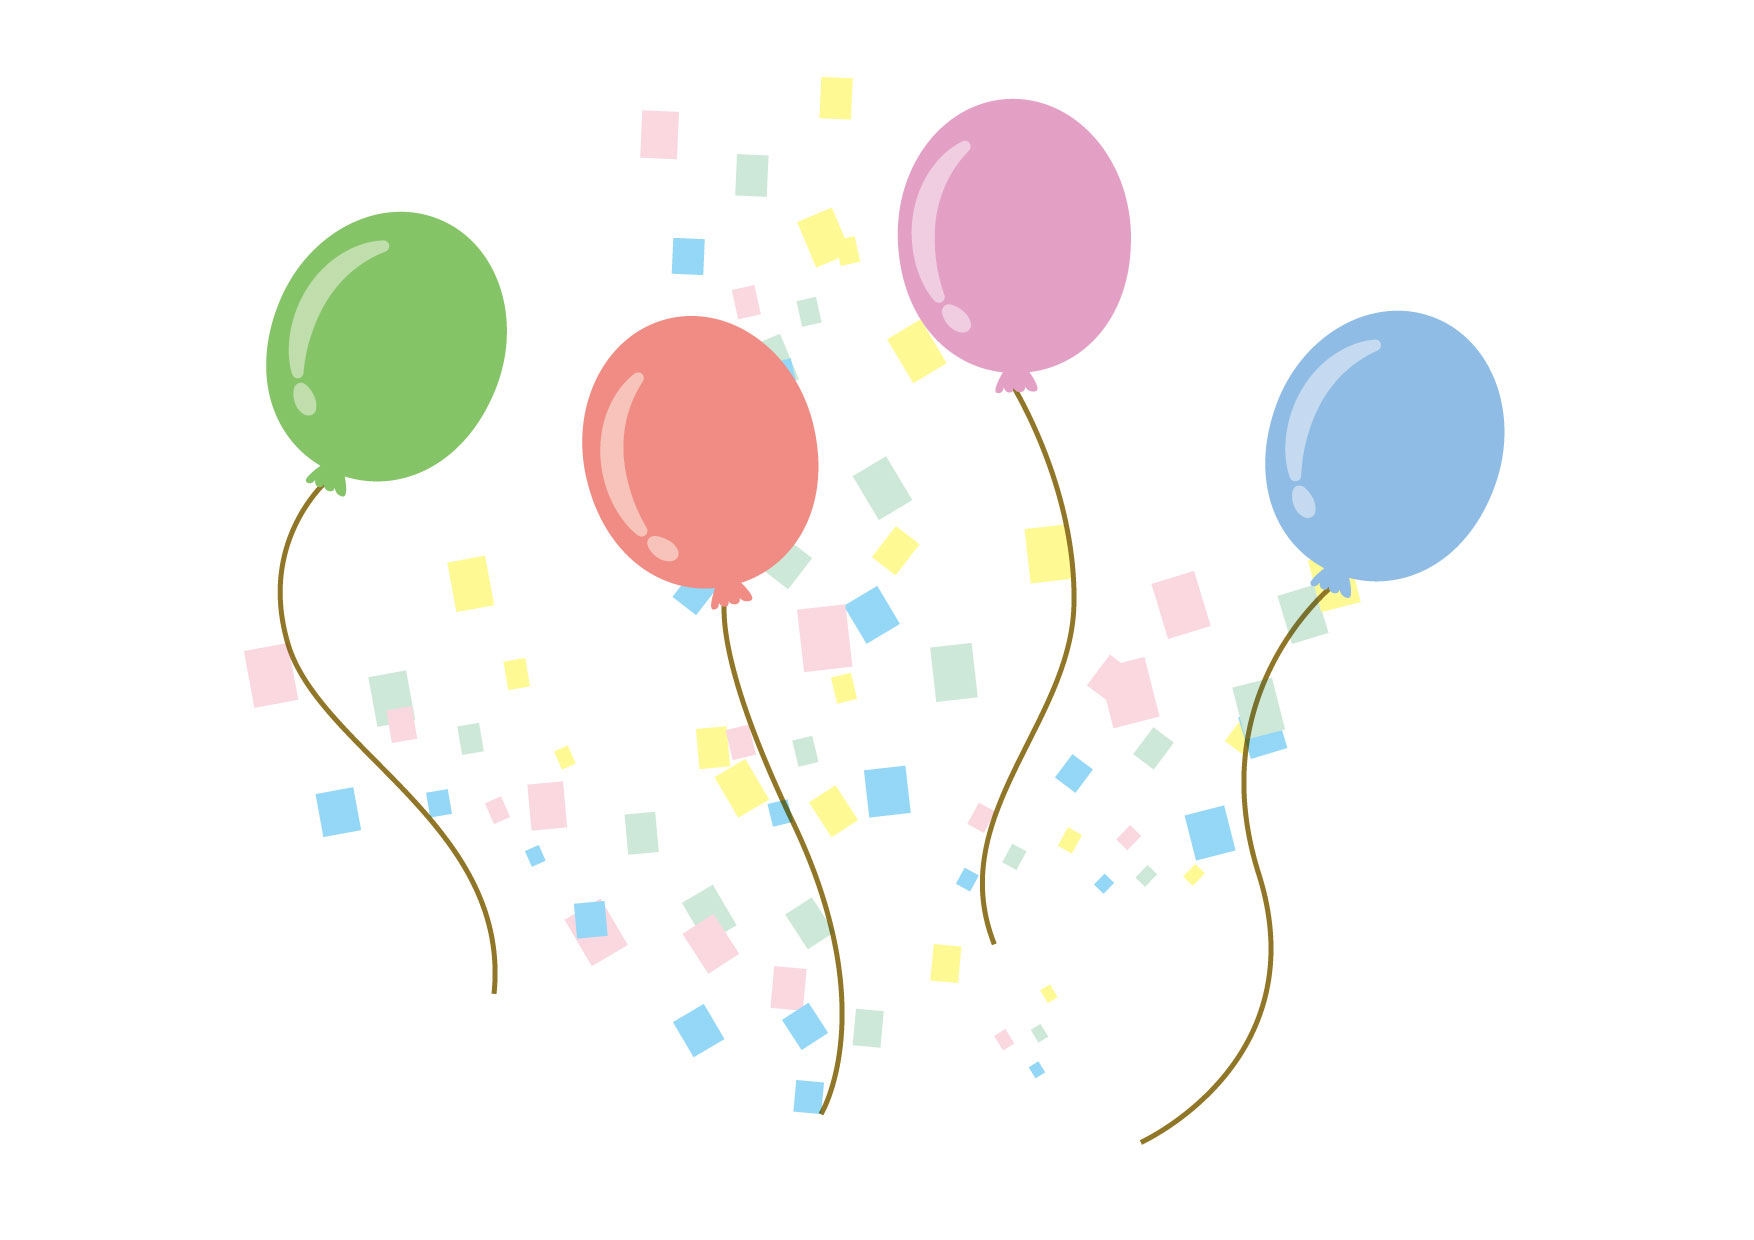 可愛いイラスト無料 風船 紙吹雪 Free Illustration Balloons Confetti イラストダウンロード